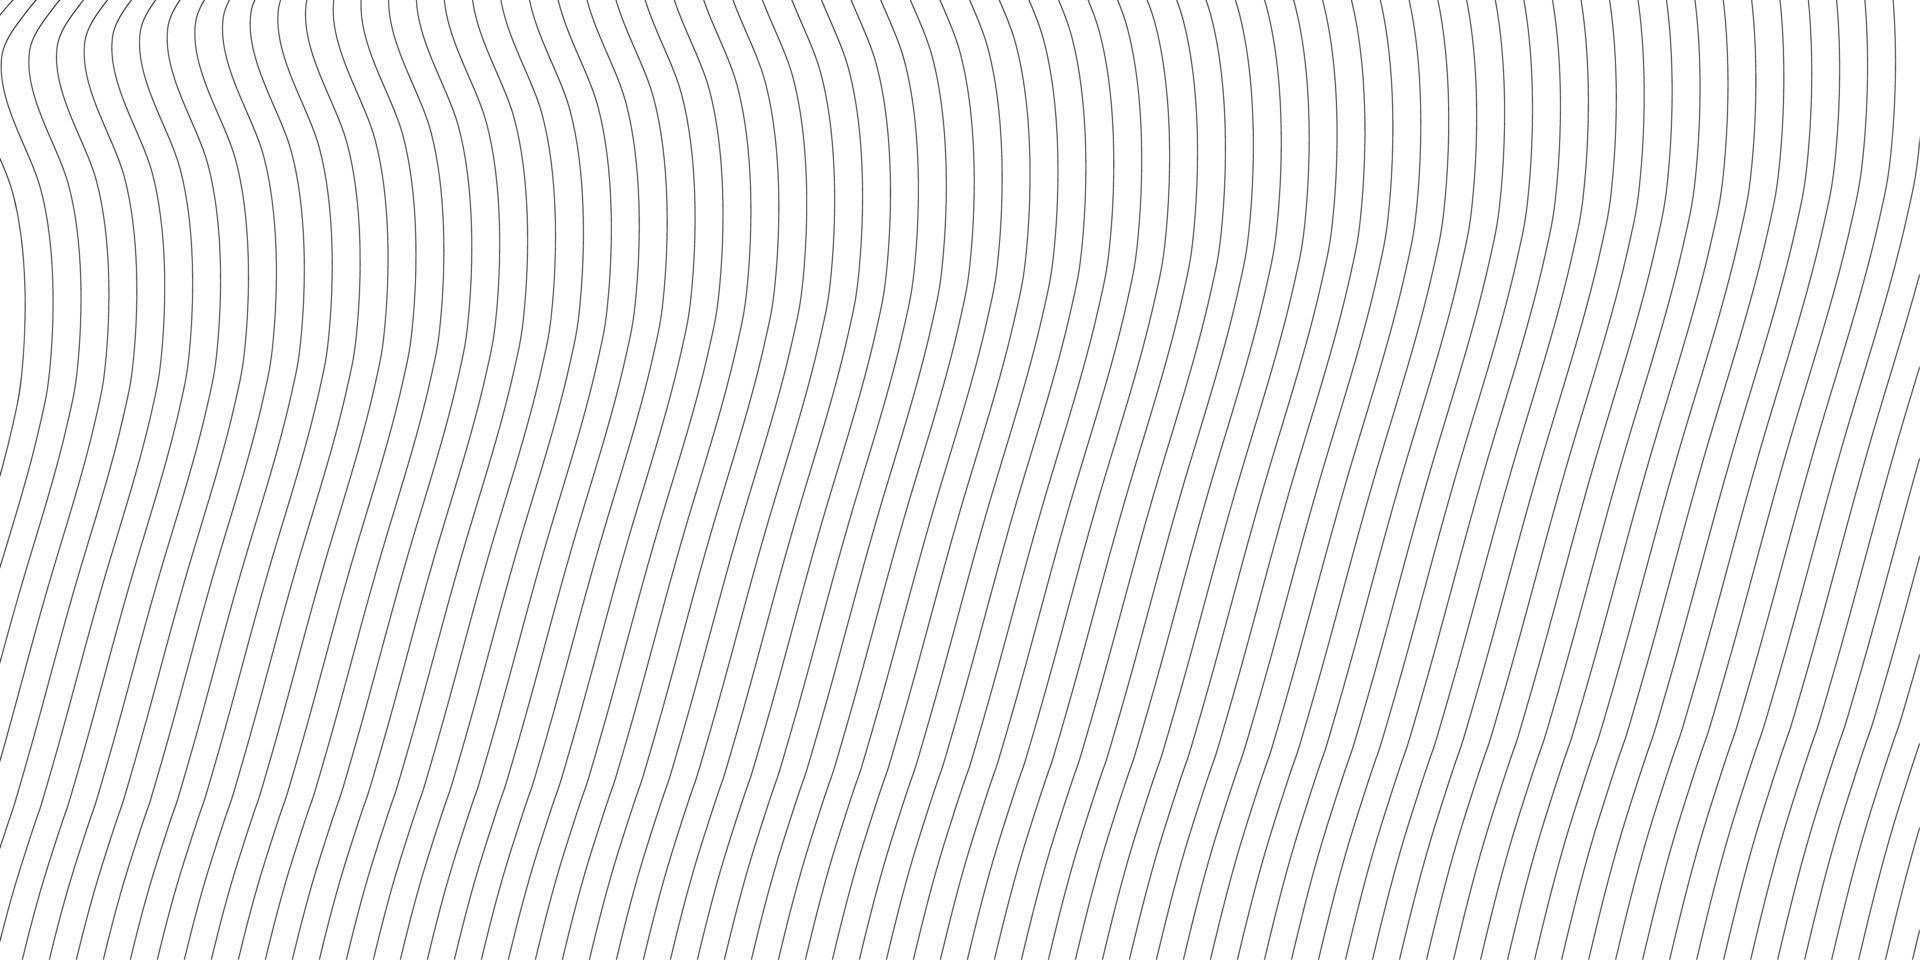 abstrakter wellenförmiger Hintergrund. dünne Linie auf weiß vektor